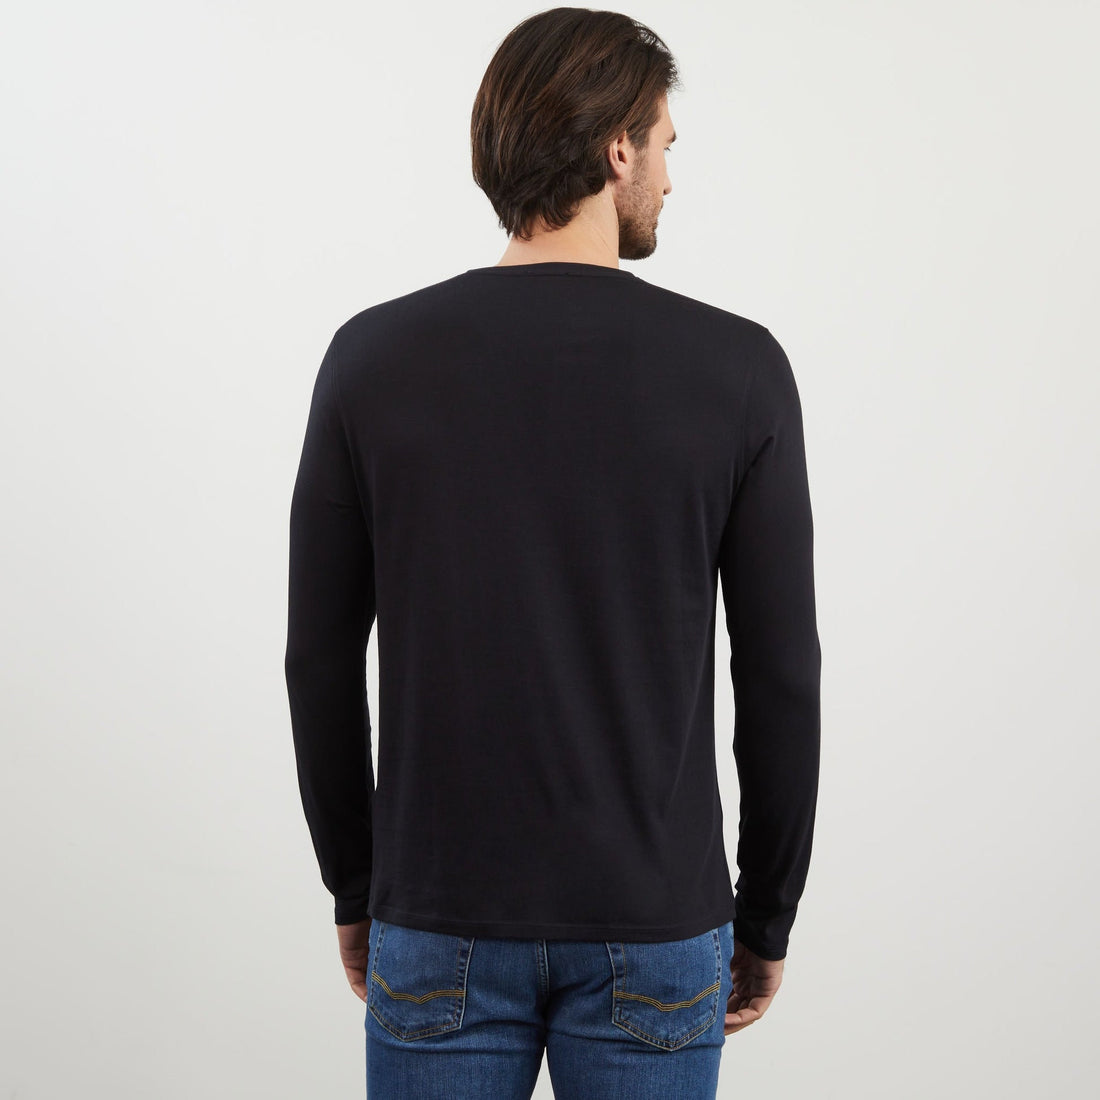 Long Sleeved Black V Neck T-Shirt_PPKNITLE0008_NO_02